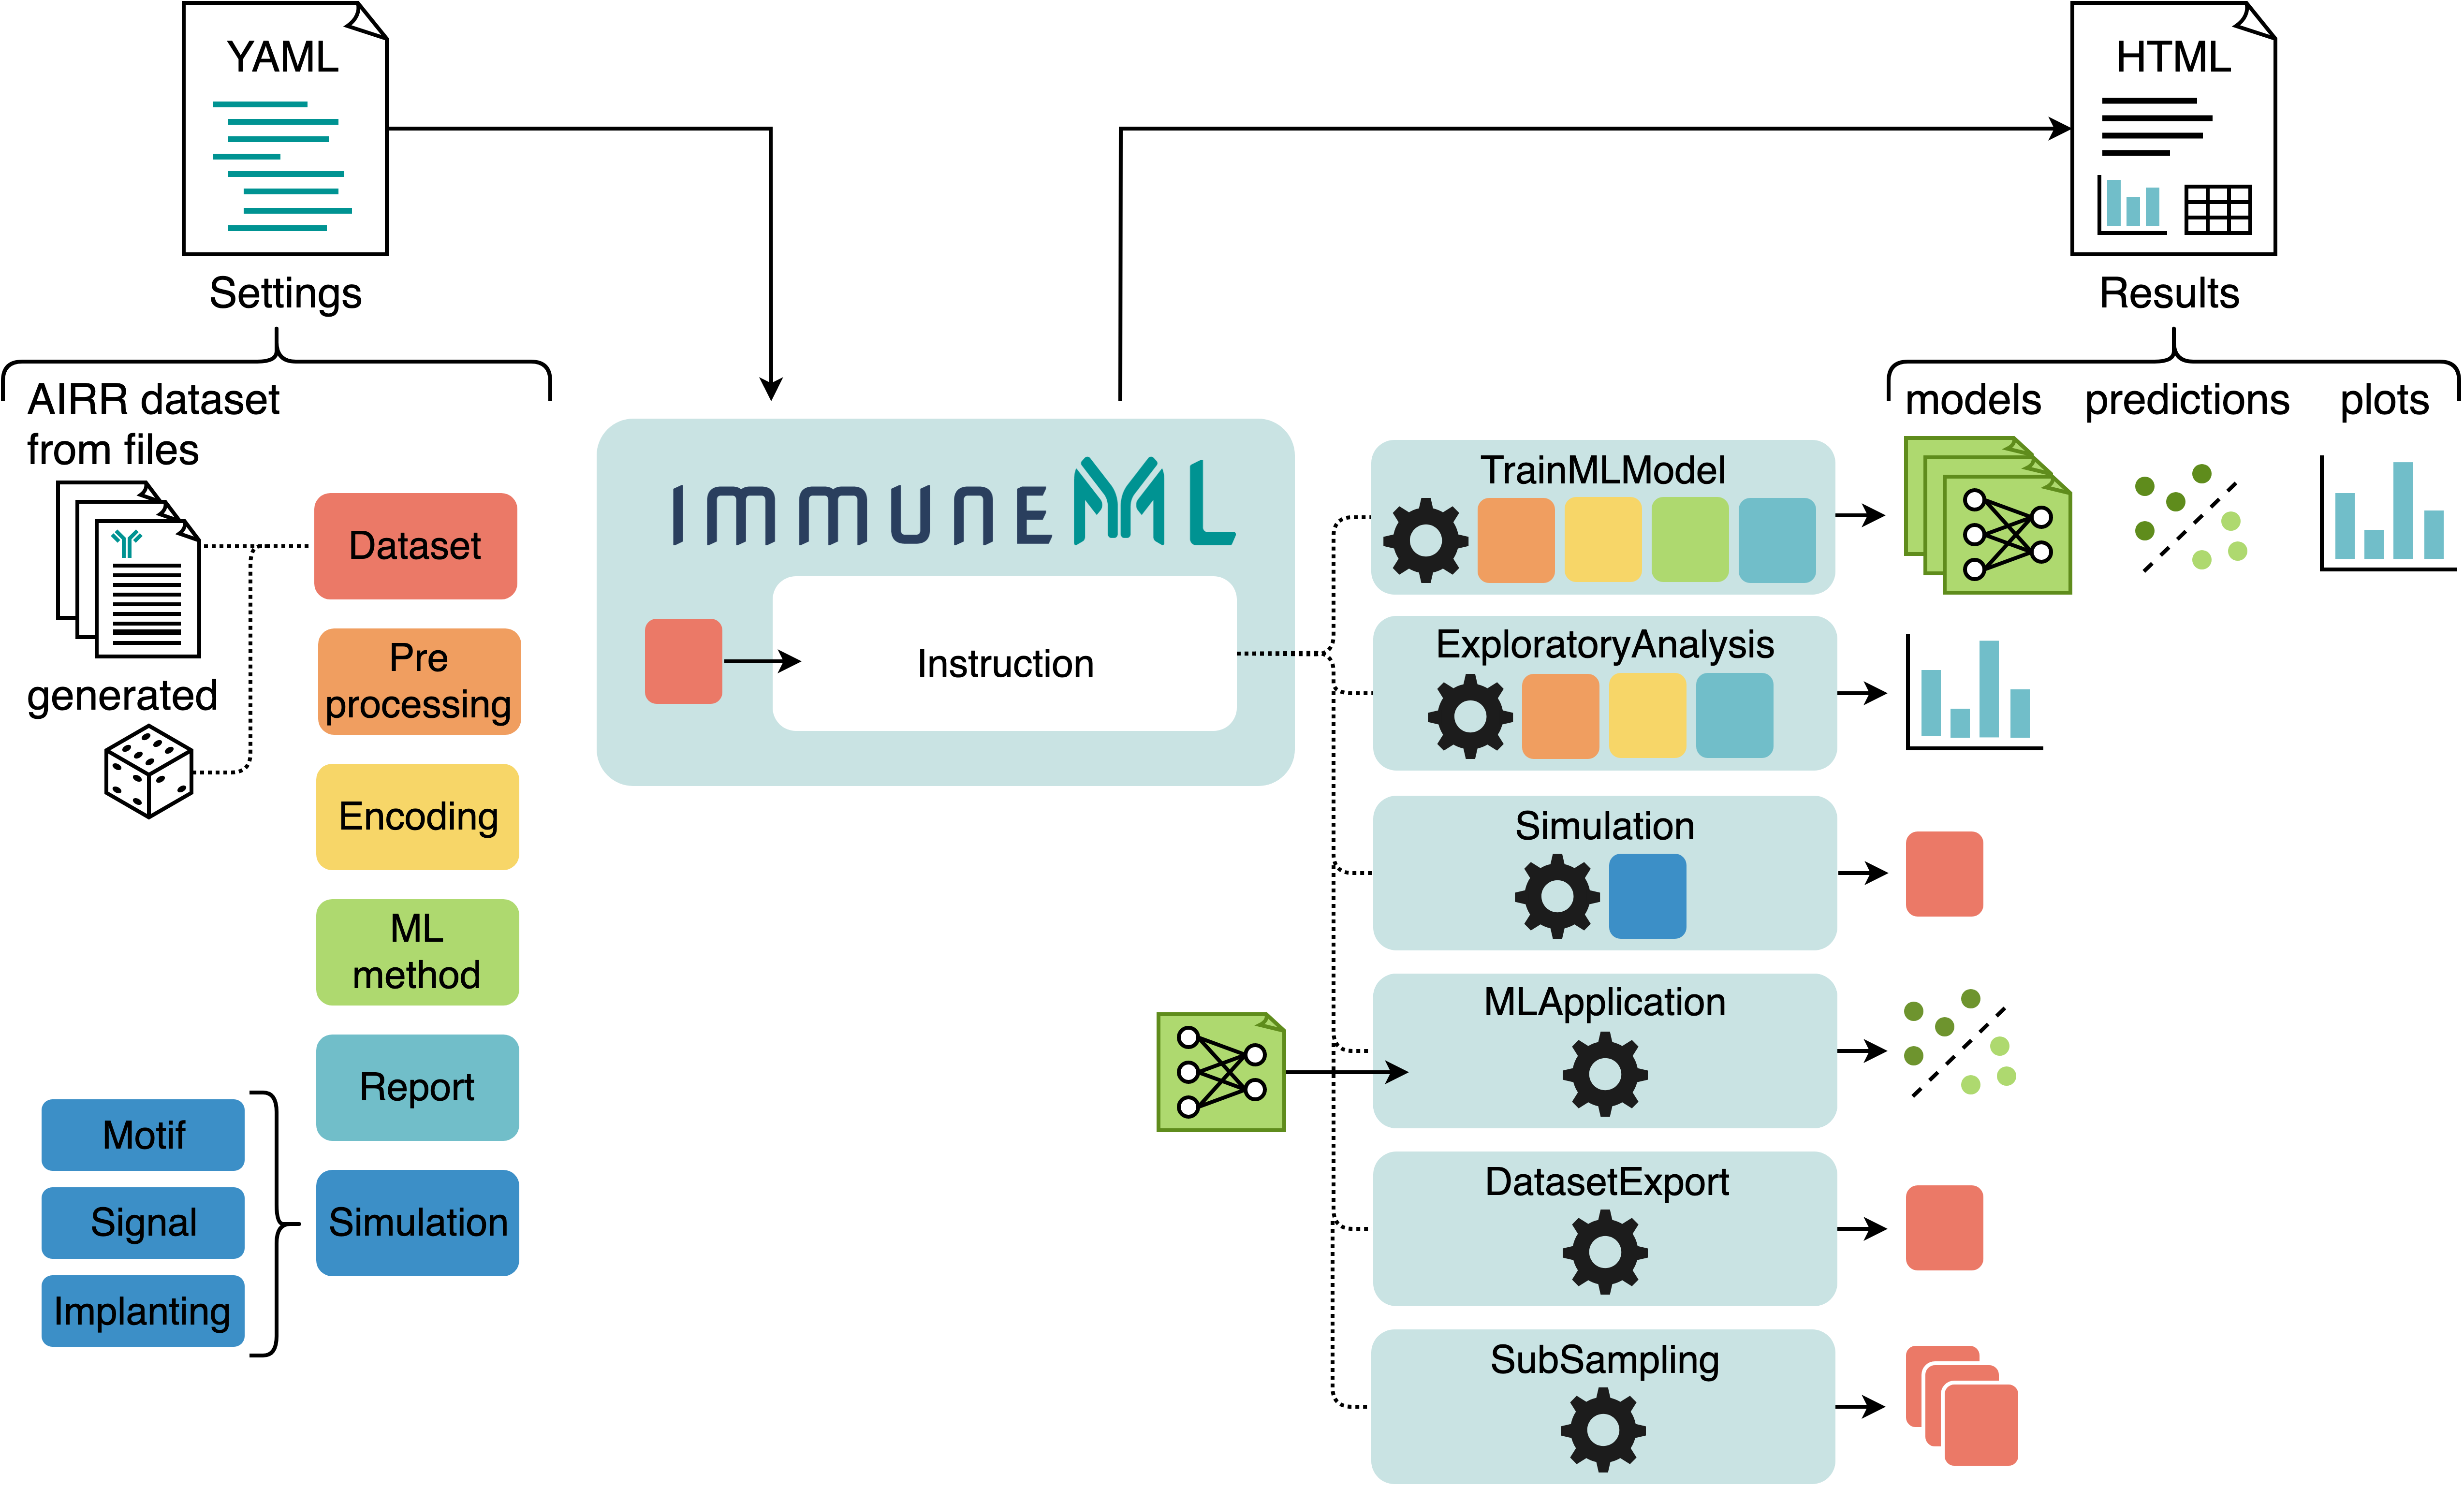 immuneML usage overview